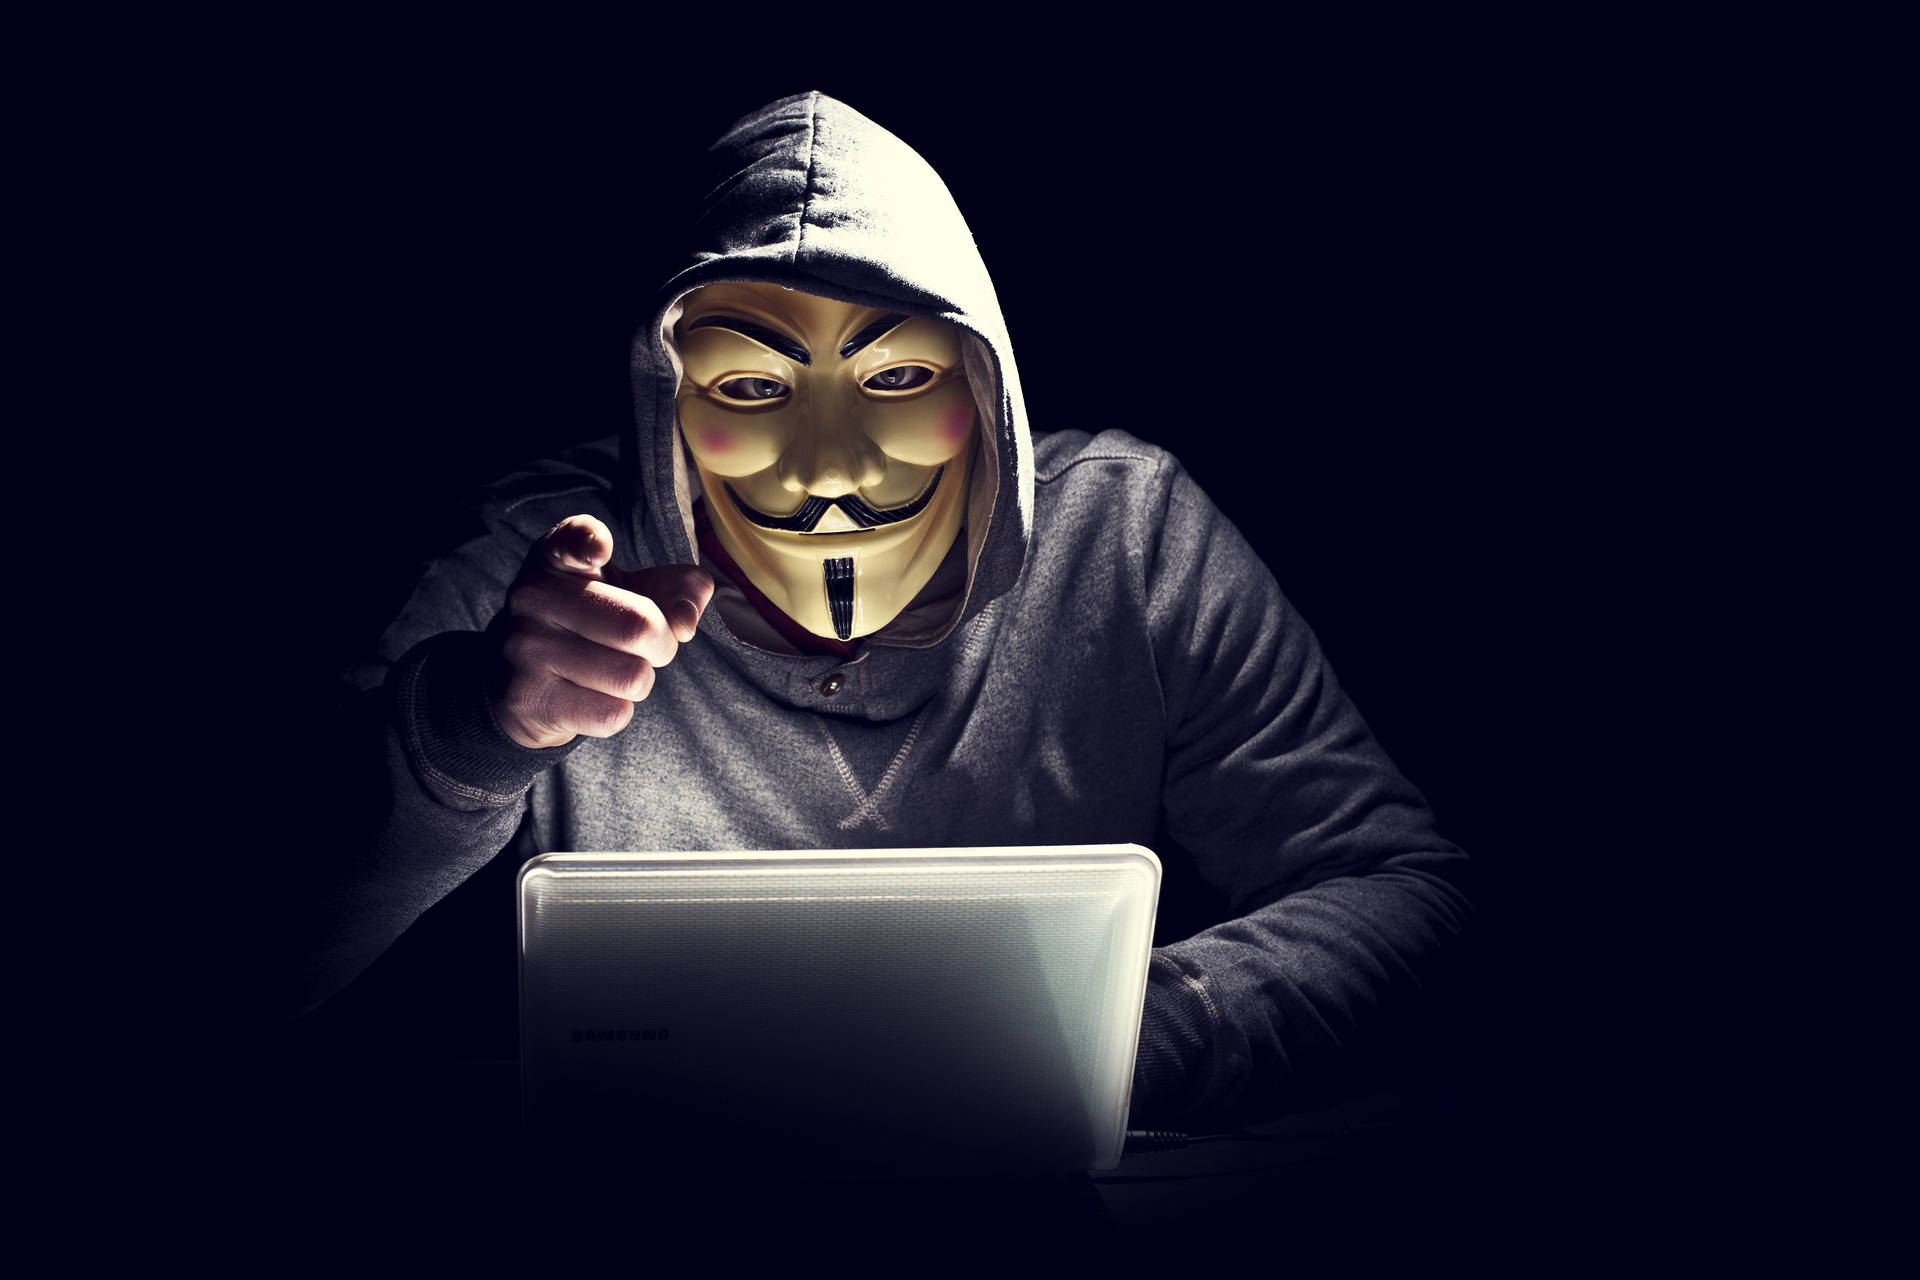 Dark Laptop Hacker Guy Fawkes Wallpaper